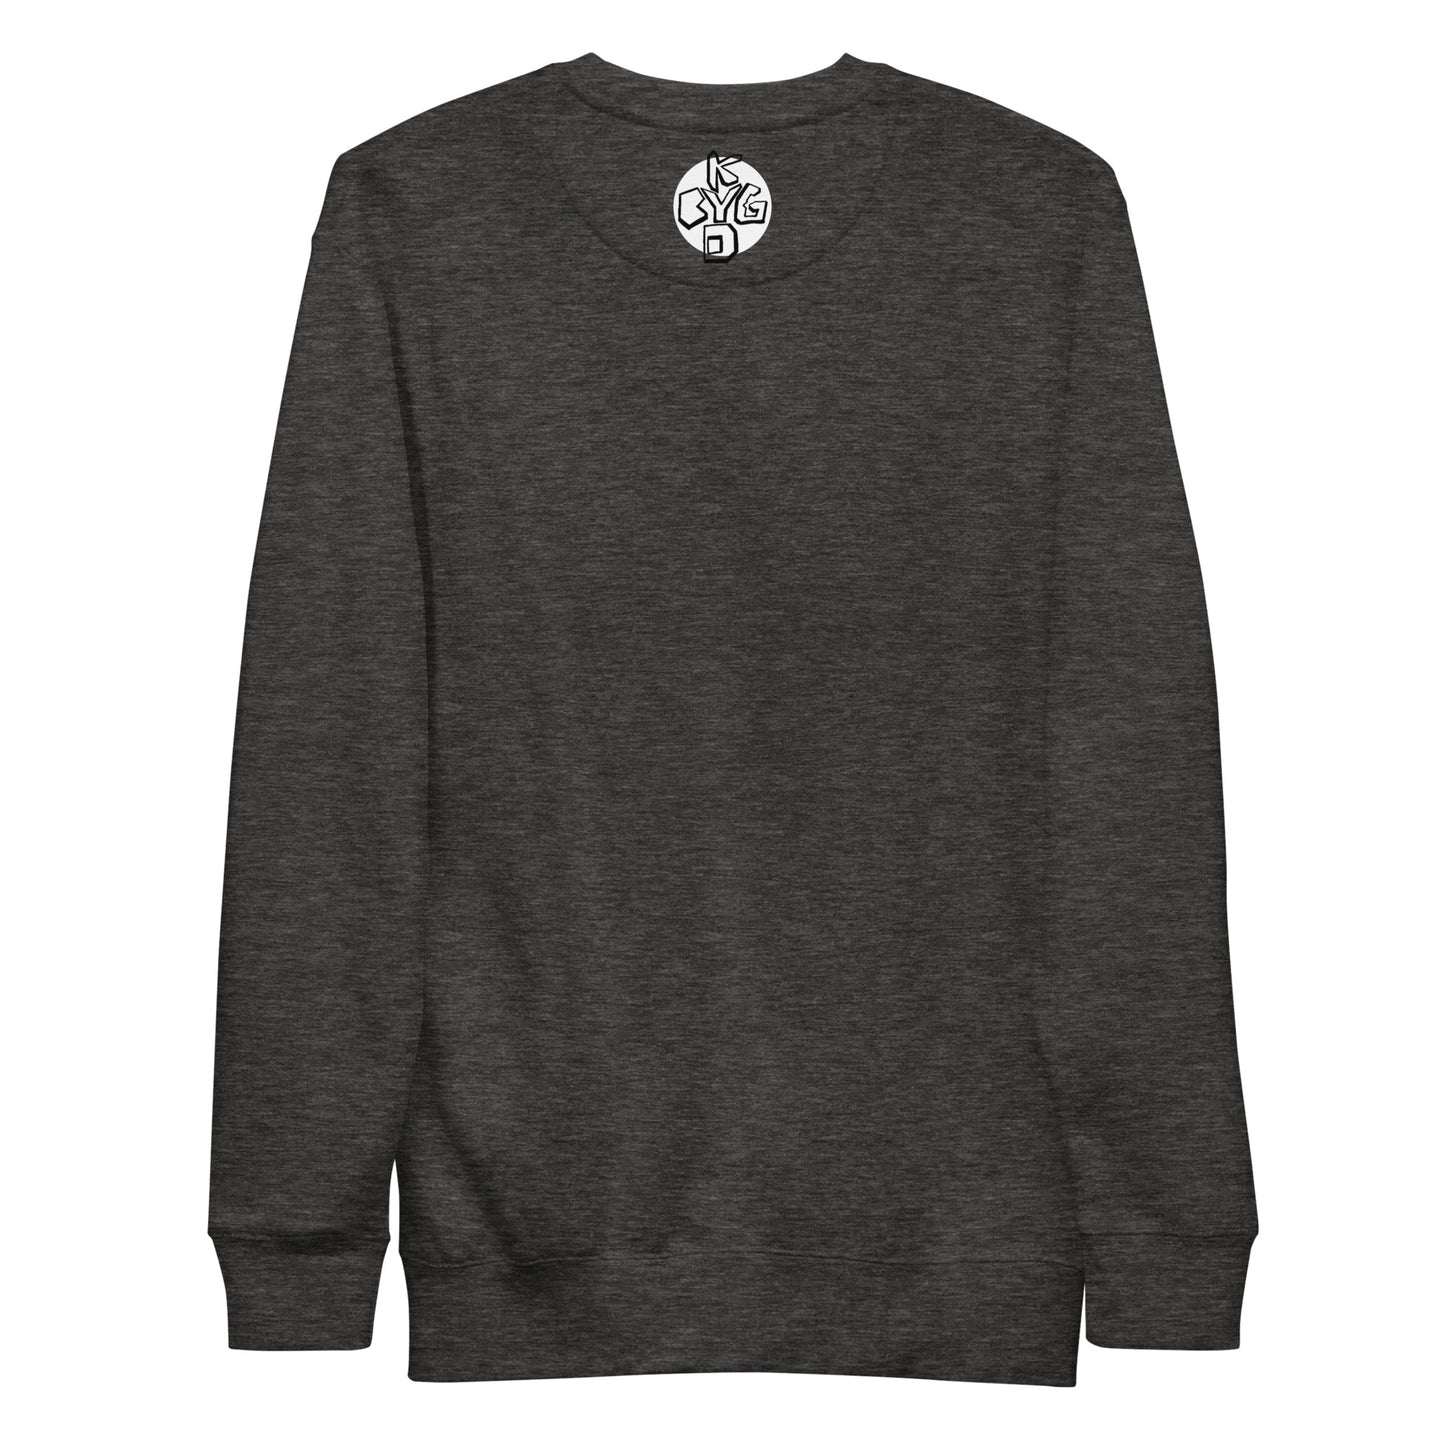 Grip - Unisex Premium Sweatshirt (S-3XL)